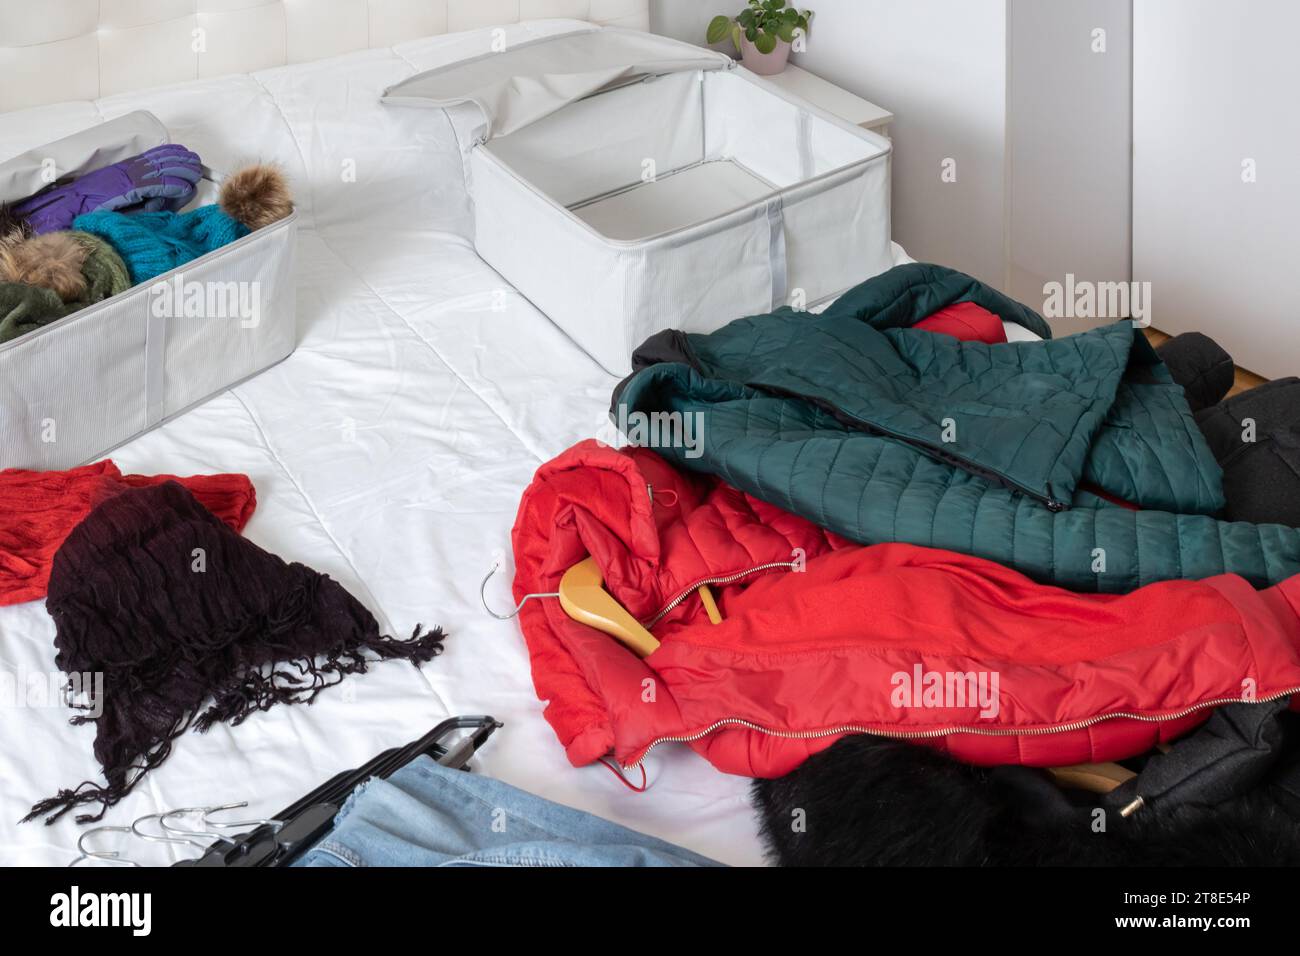 Foto orizzontale, di una stanza con vestiti invernali sdraiati sopra il letto, da raccogliere all'interno delle scatole di tessuto. Cambio armadio. Foto Stock